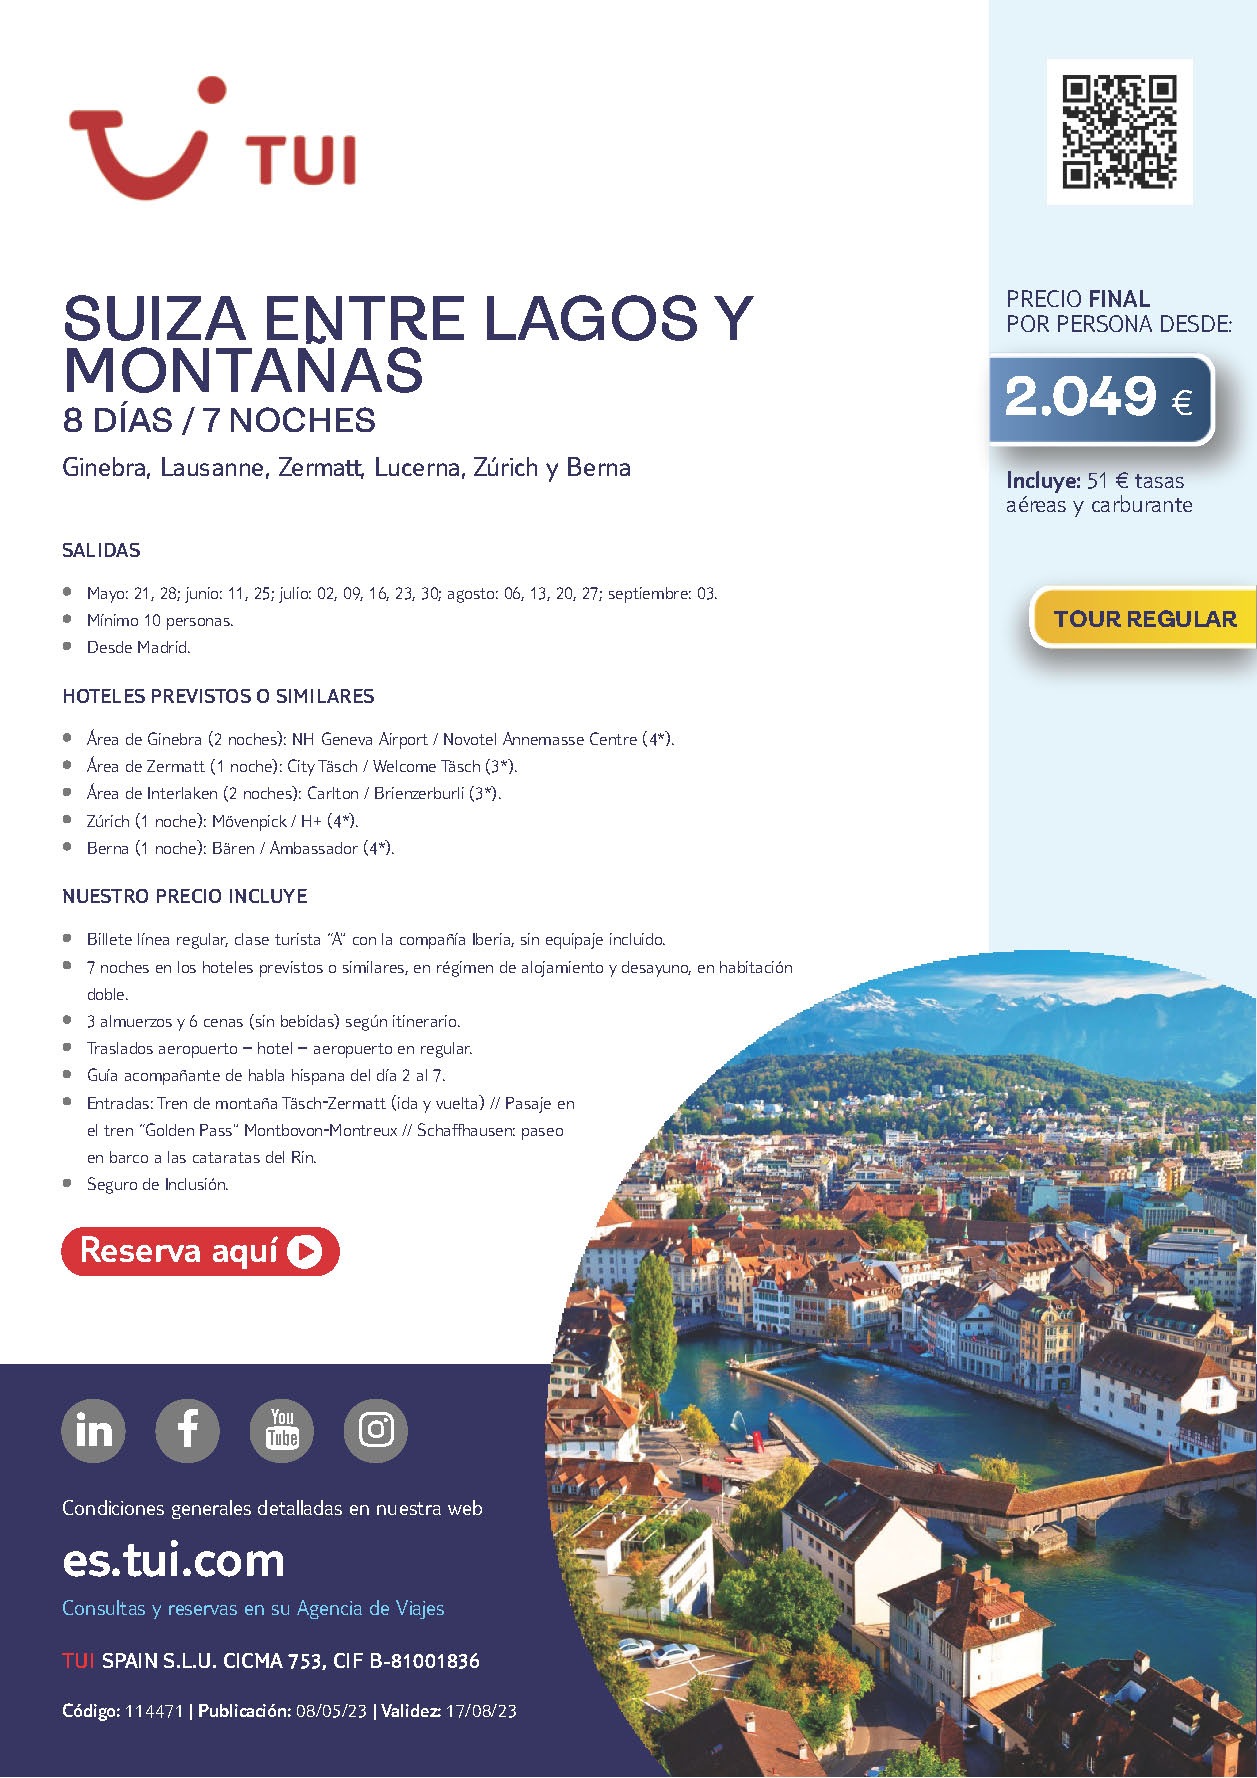 Oferta TUI Suiza entre Lagos y Montañas 8 dias Mayo a Septiembre 2023 salidas desde Madrid vuelos Iberia